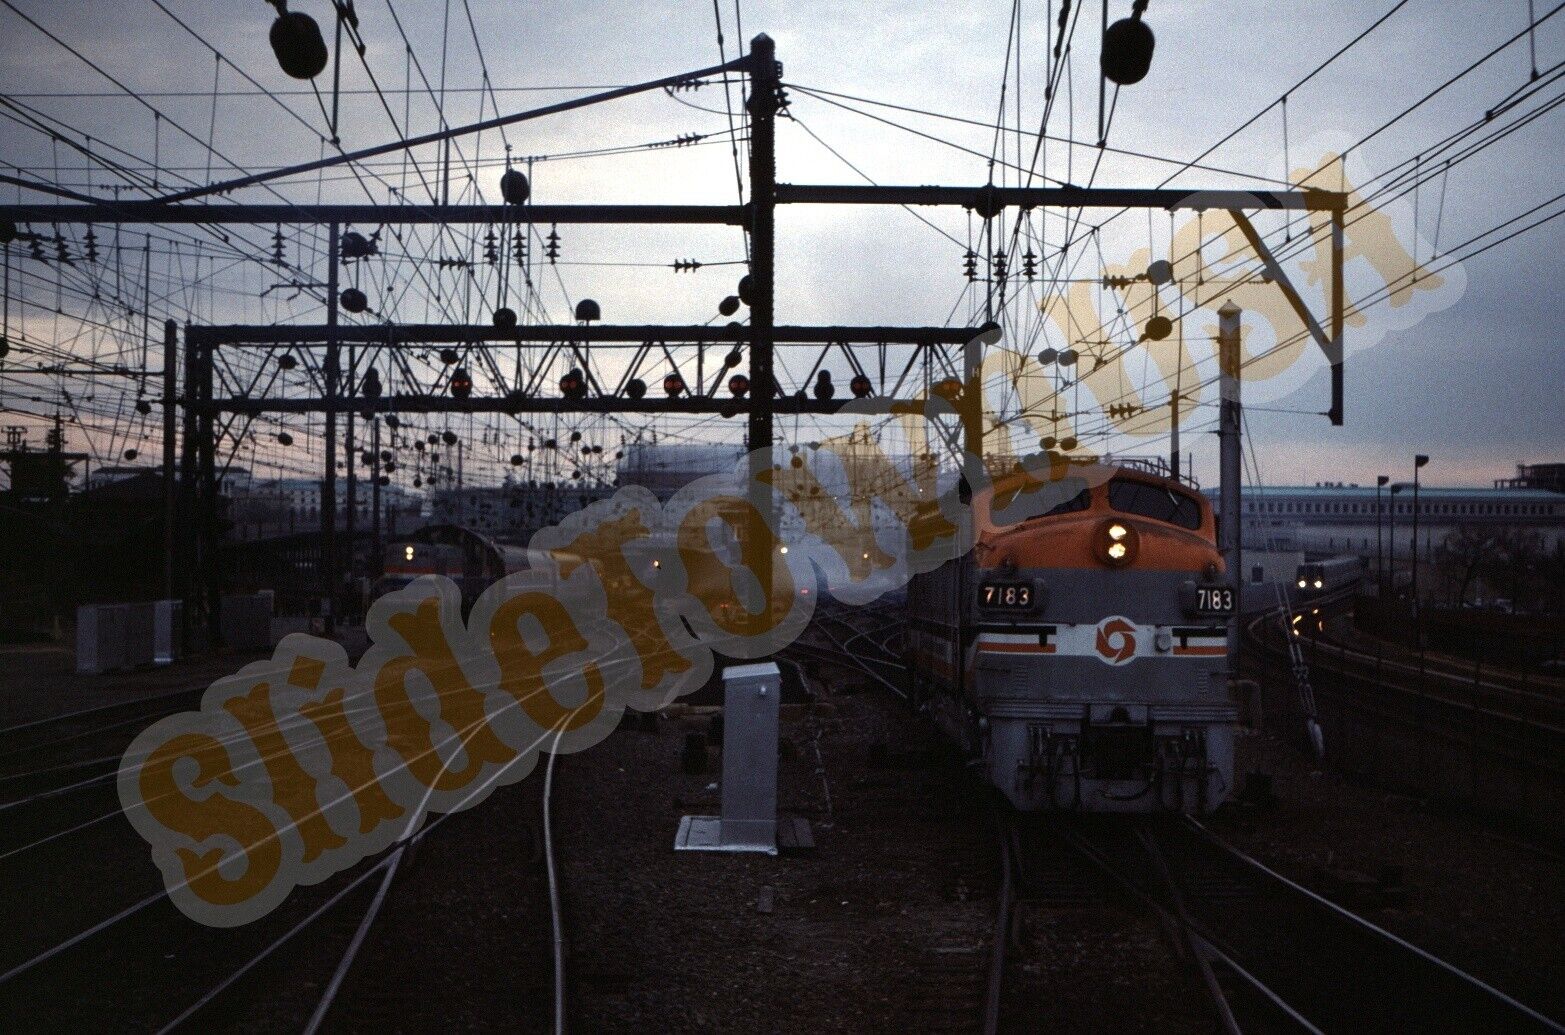 Vtg 1985 Train Slide 7183 MDOT & AMTK Amtrak Engines Y1I136